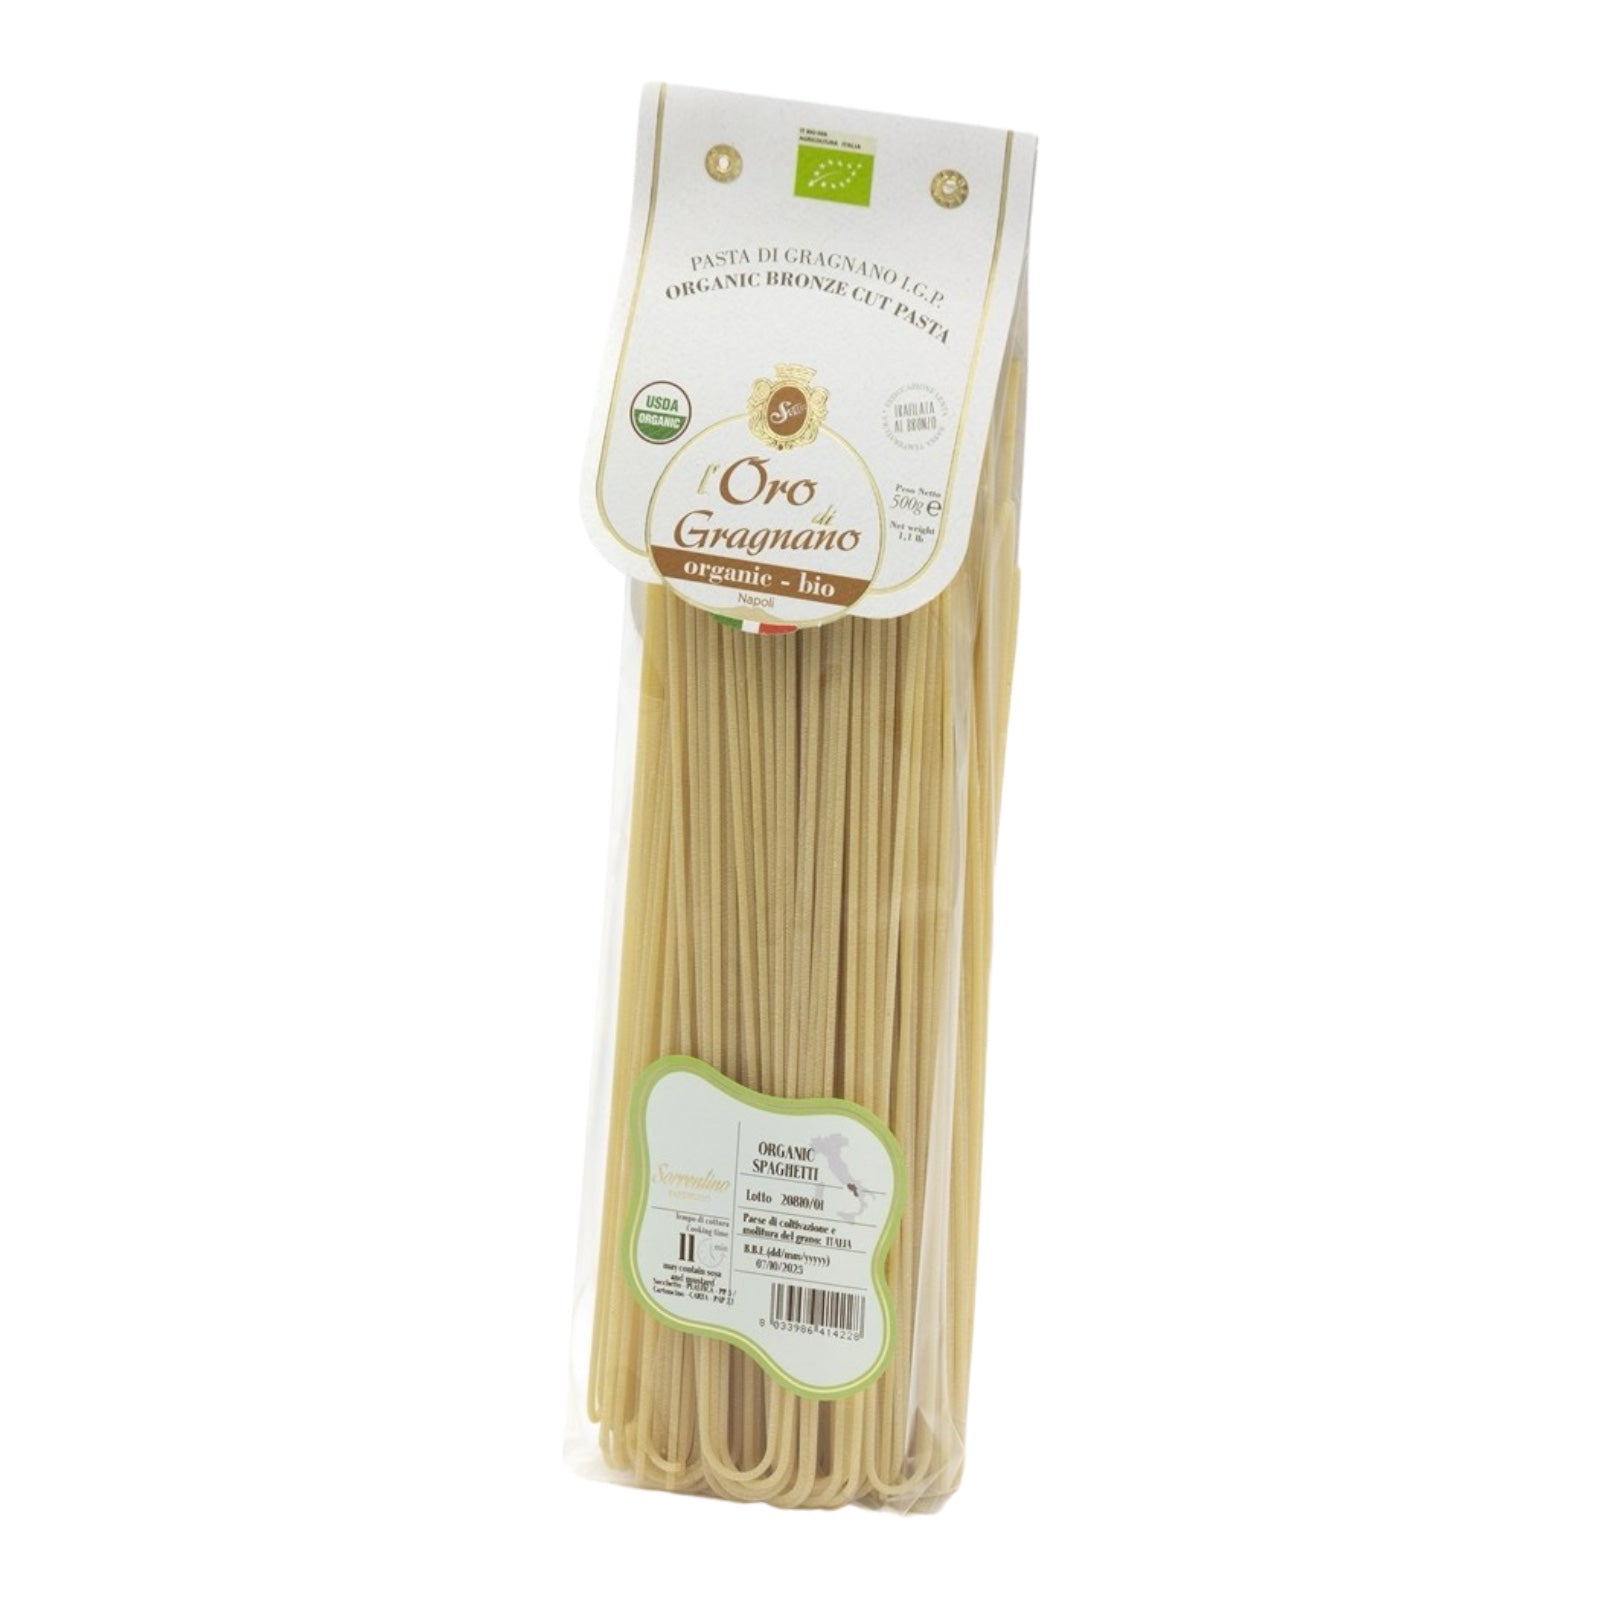 L'Oro di Gragnano Spaghetti Pasta Organic By Sorrentino Pastificio 500g 1.1lb